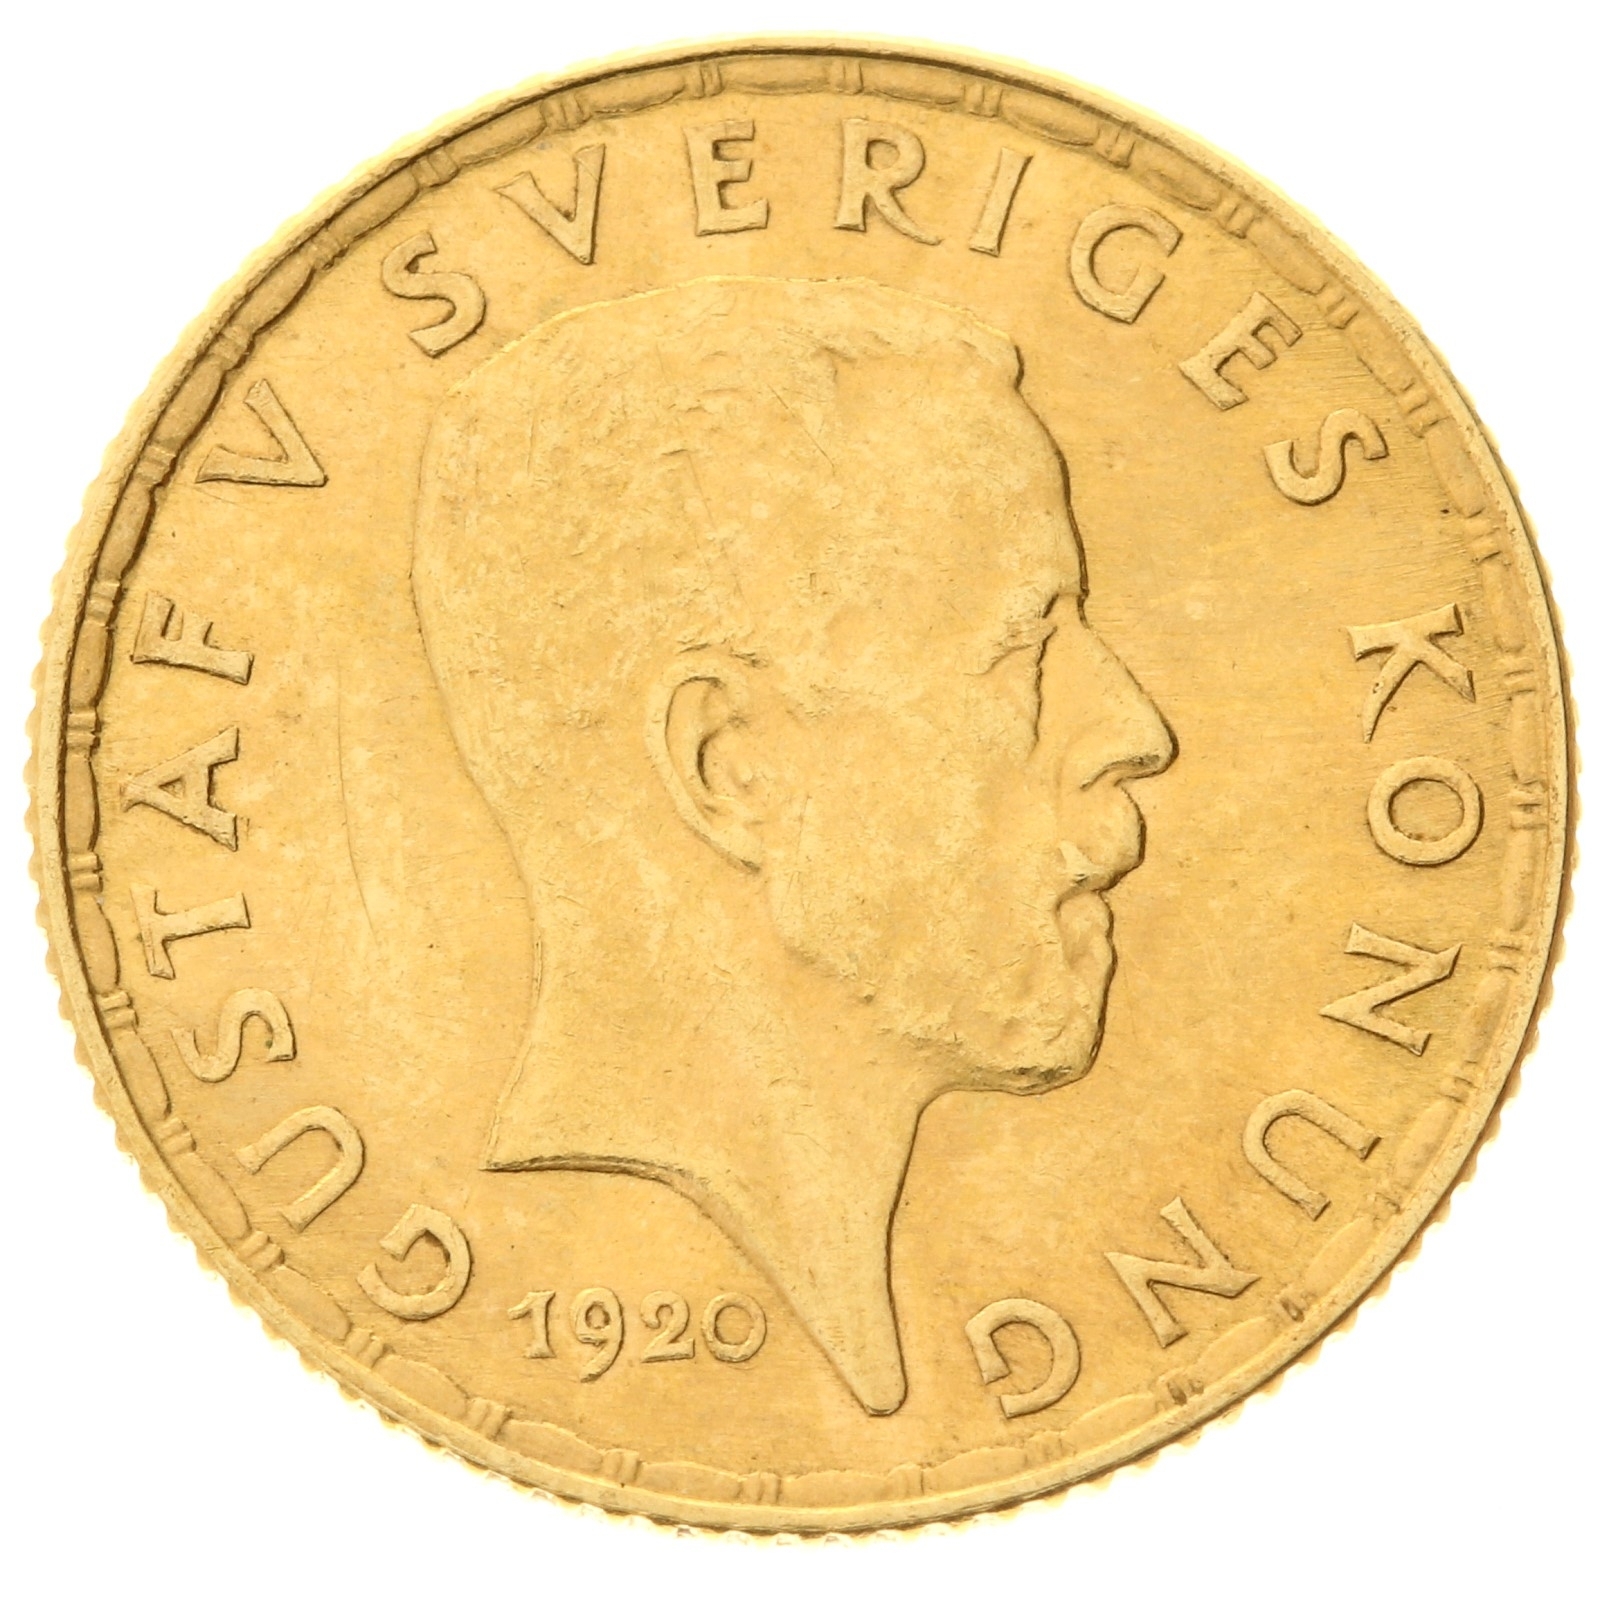 Sweden - 5 kronor - 1920 - Gustaf V